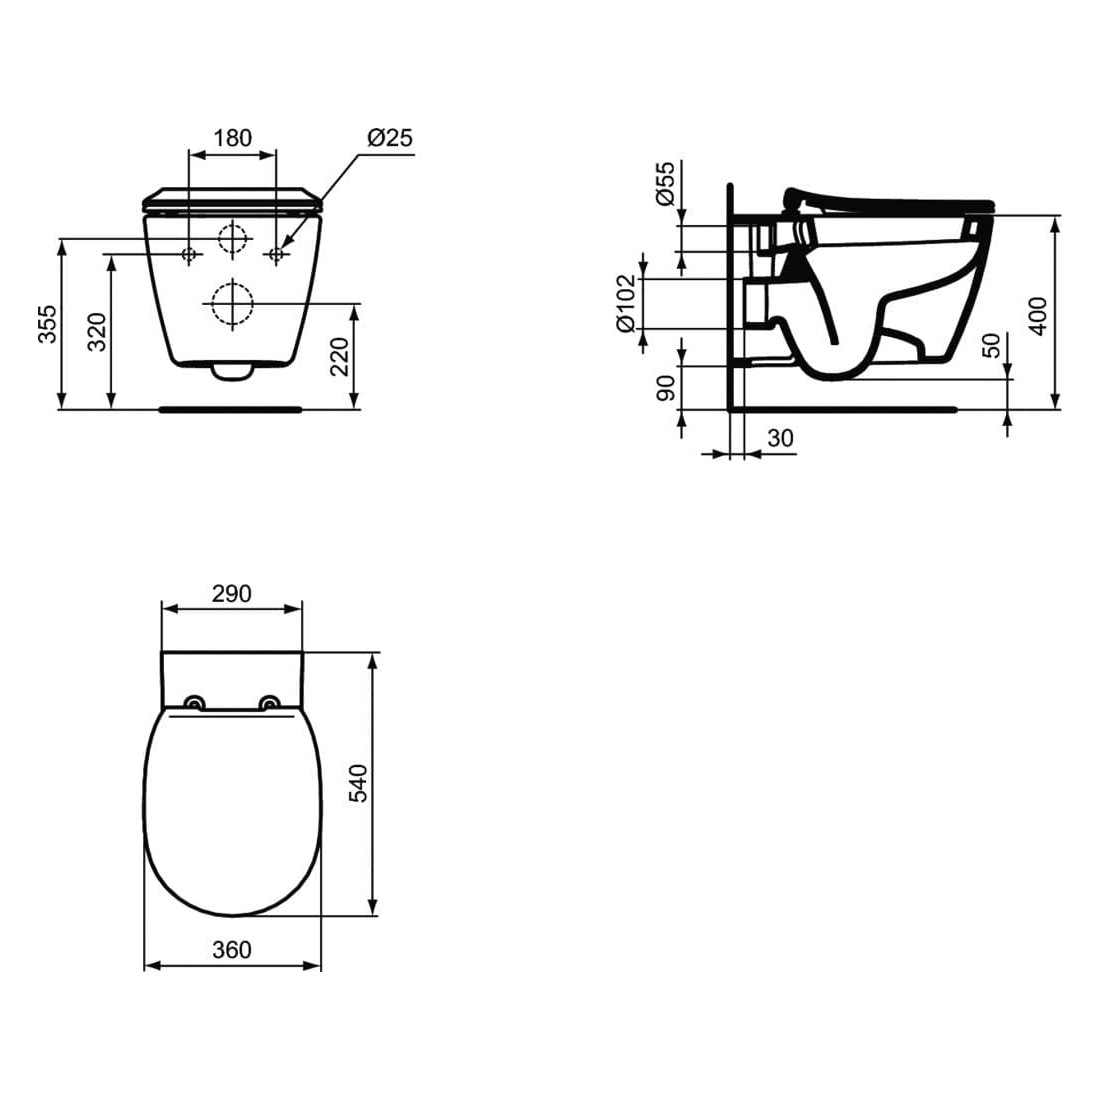 WC pakabinamas Ideal Standard Connect, su paslėptais tvirtinimais